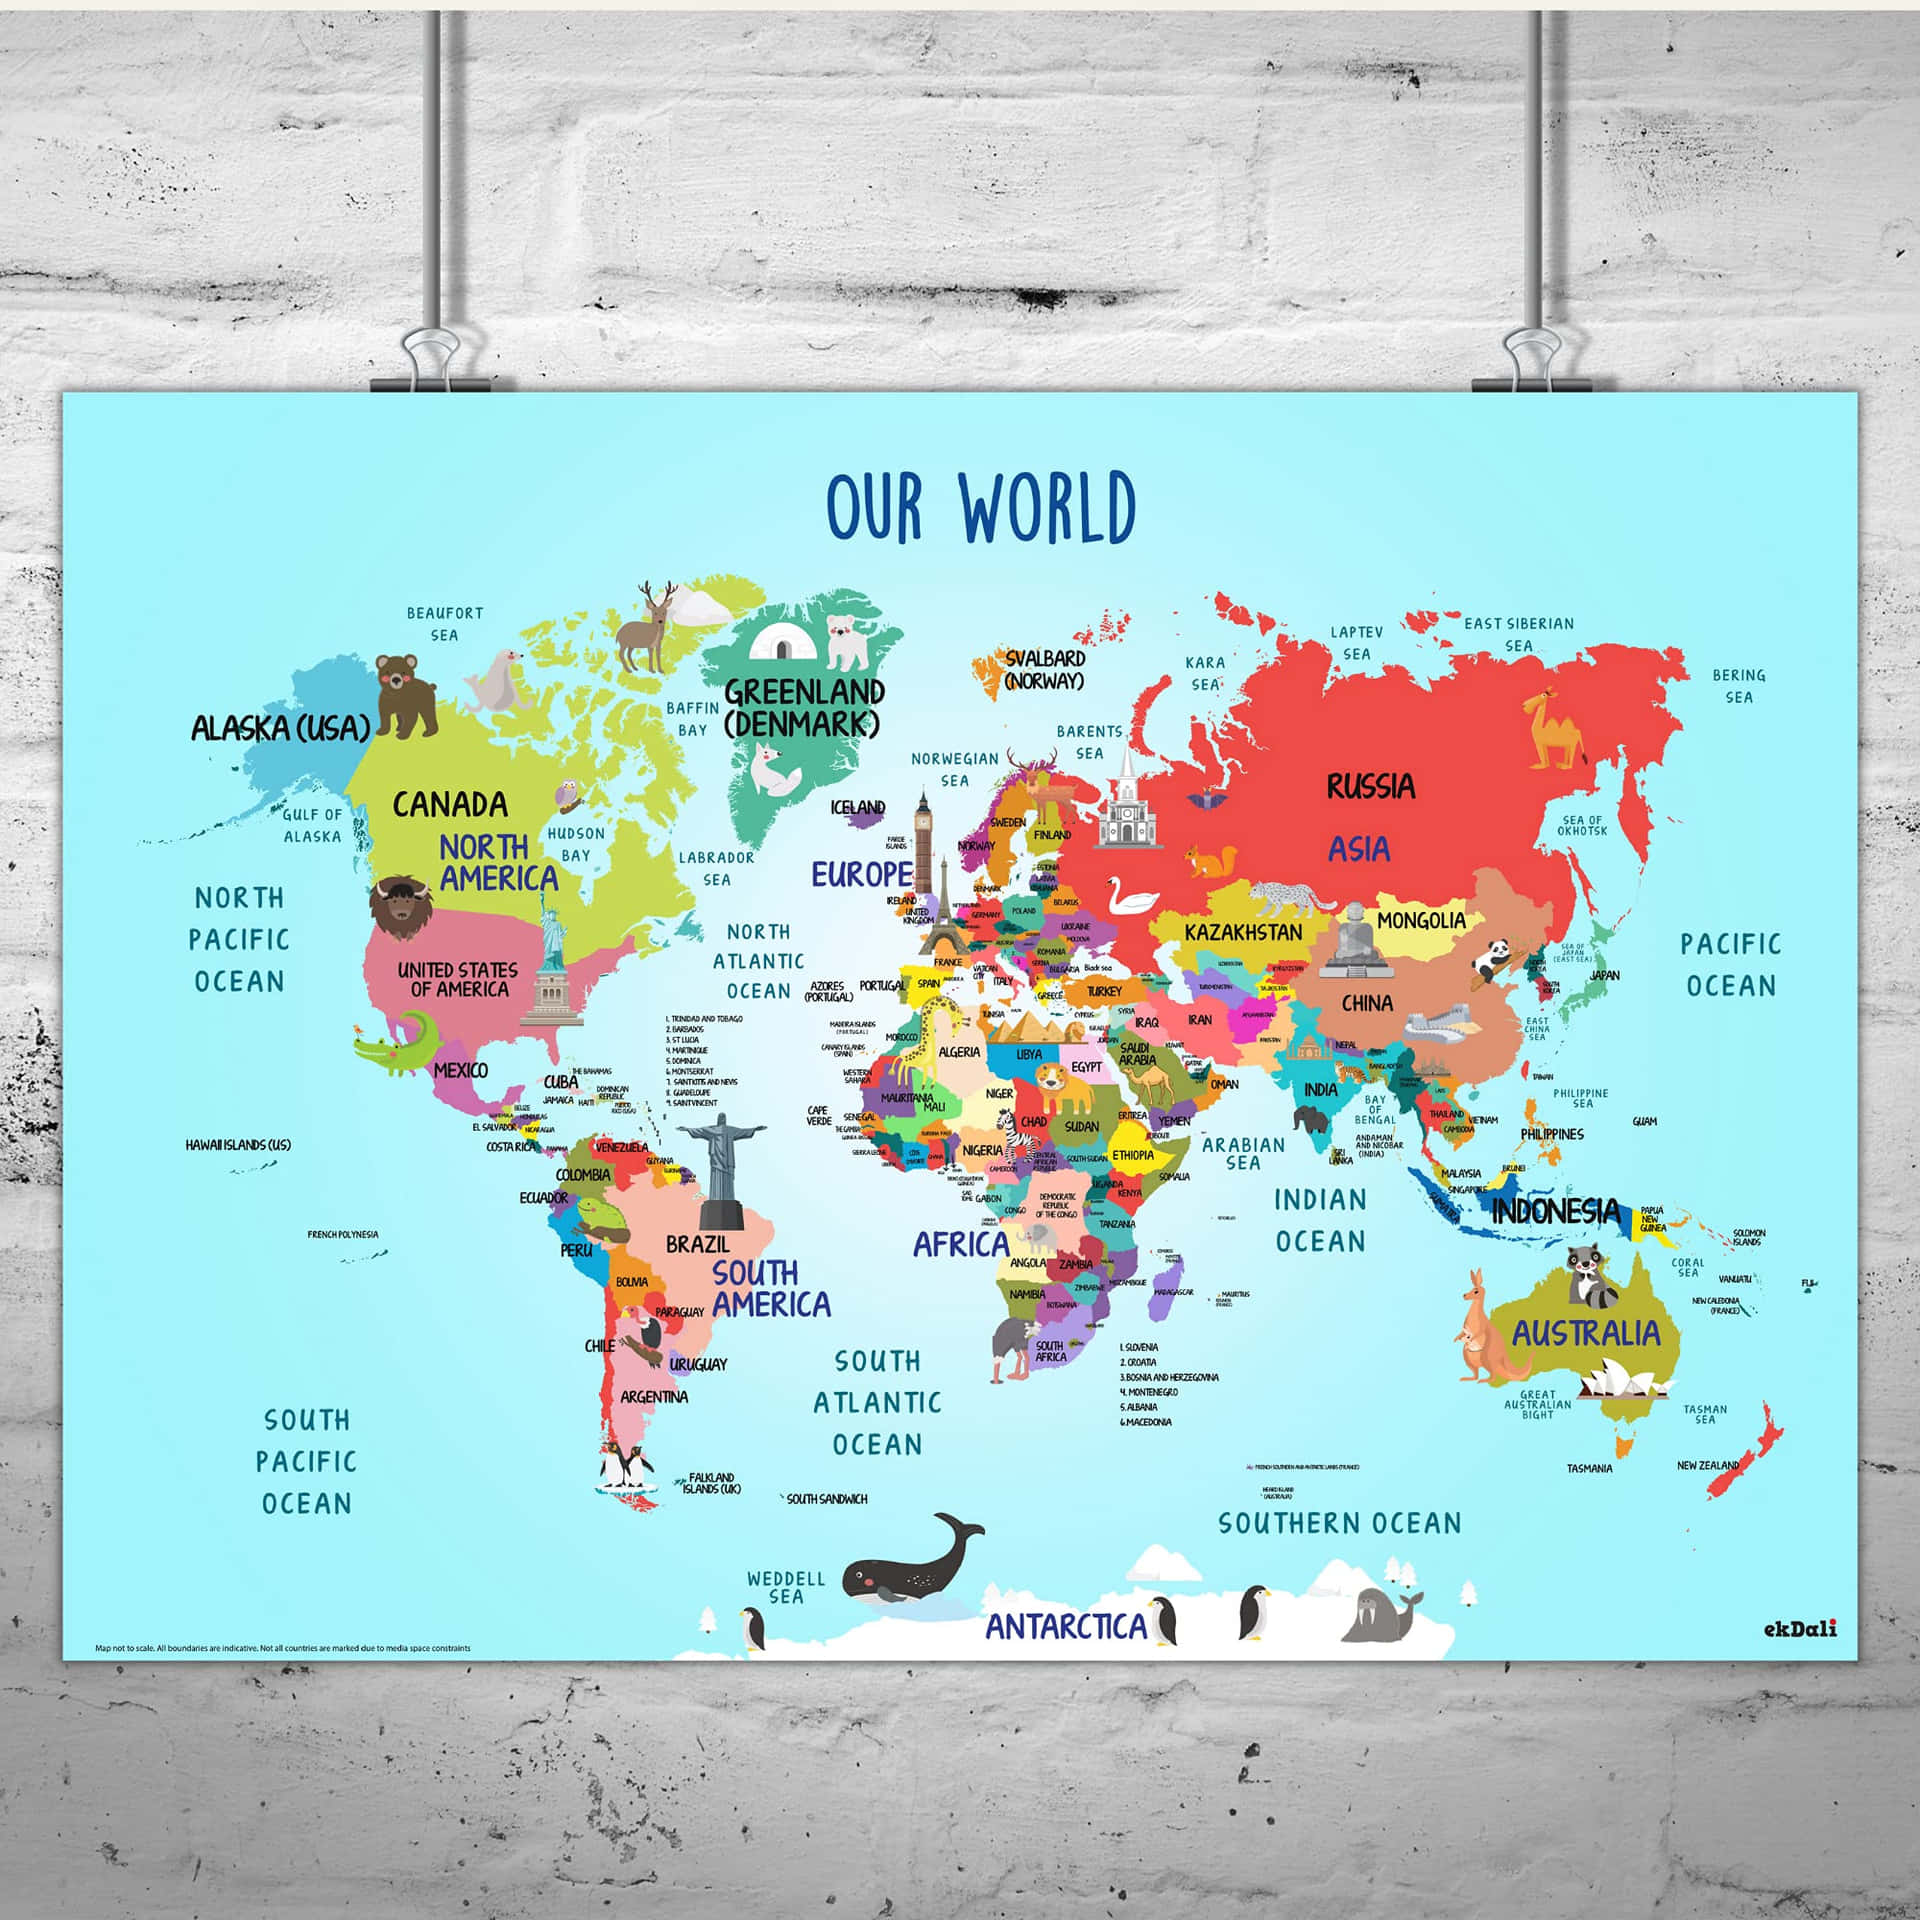 Imágenesdel Mapa Mundial.